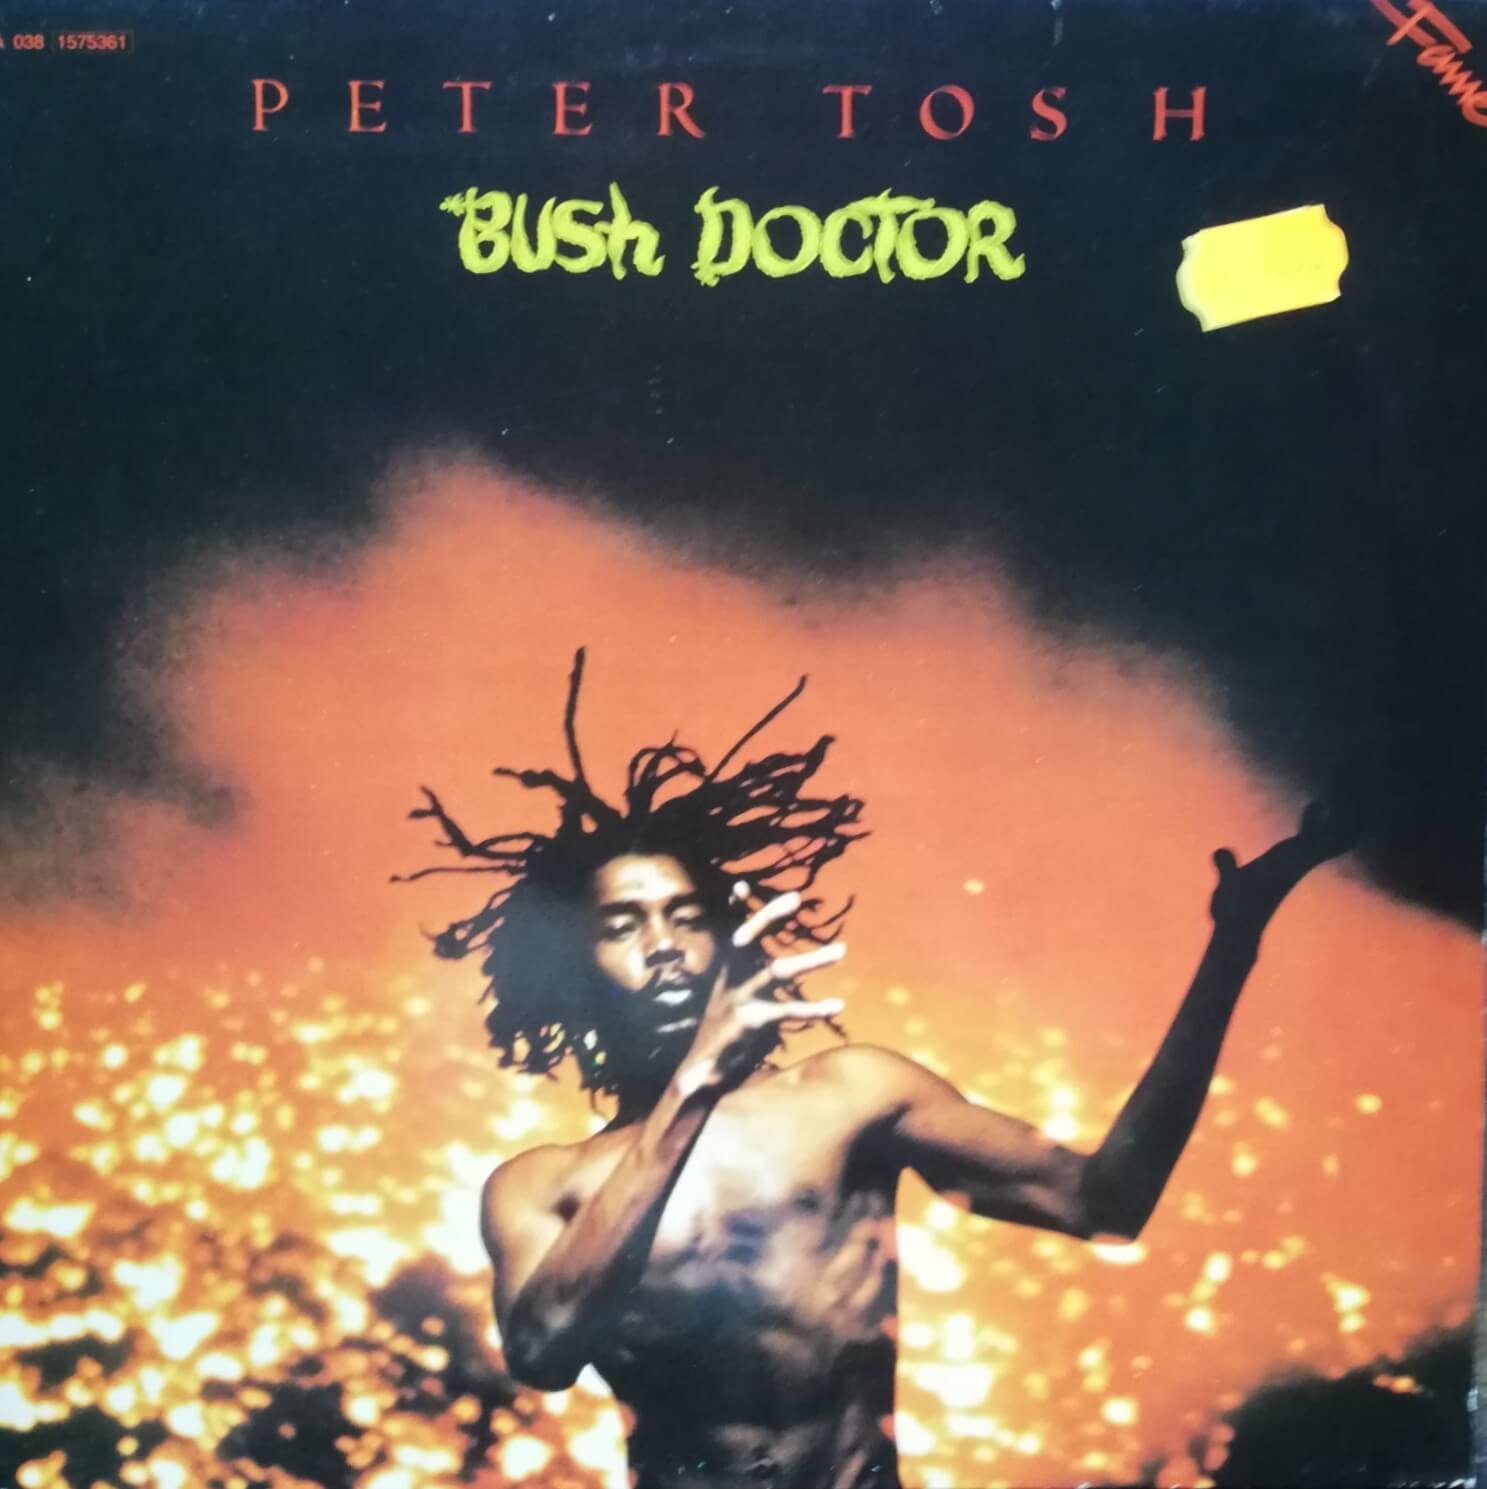 Okładka płyty winylowej artysty artysty Peter Tosh o tytule Bush Doctor